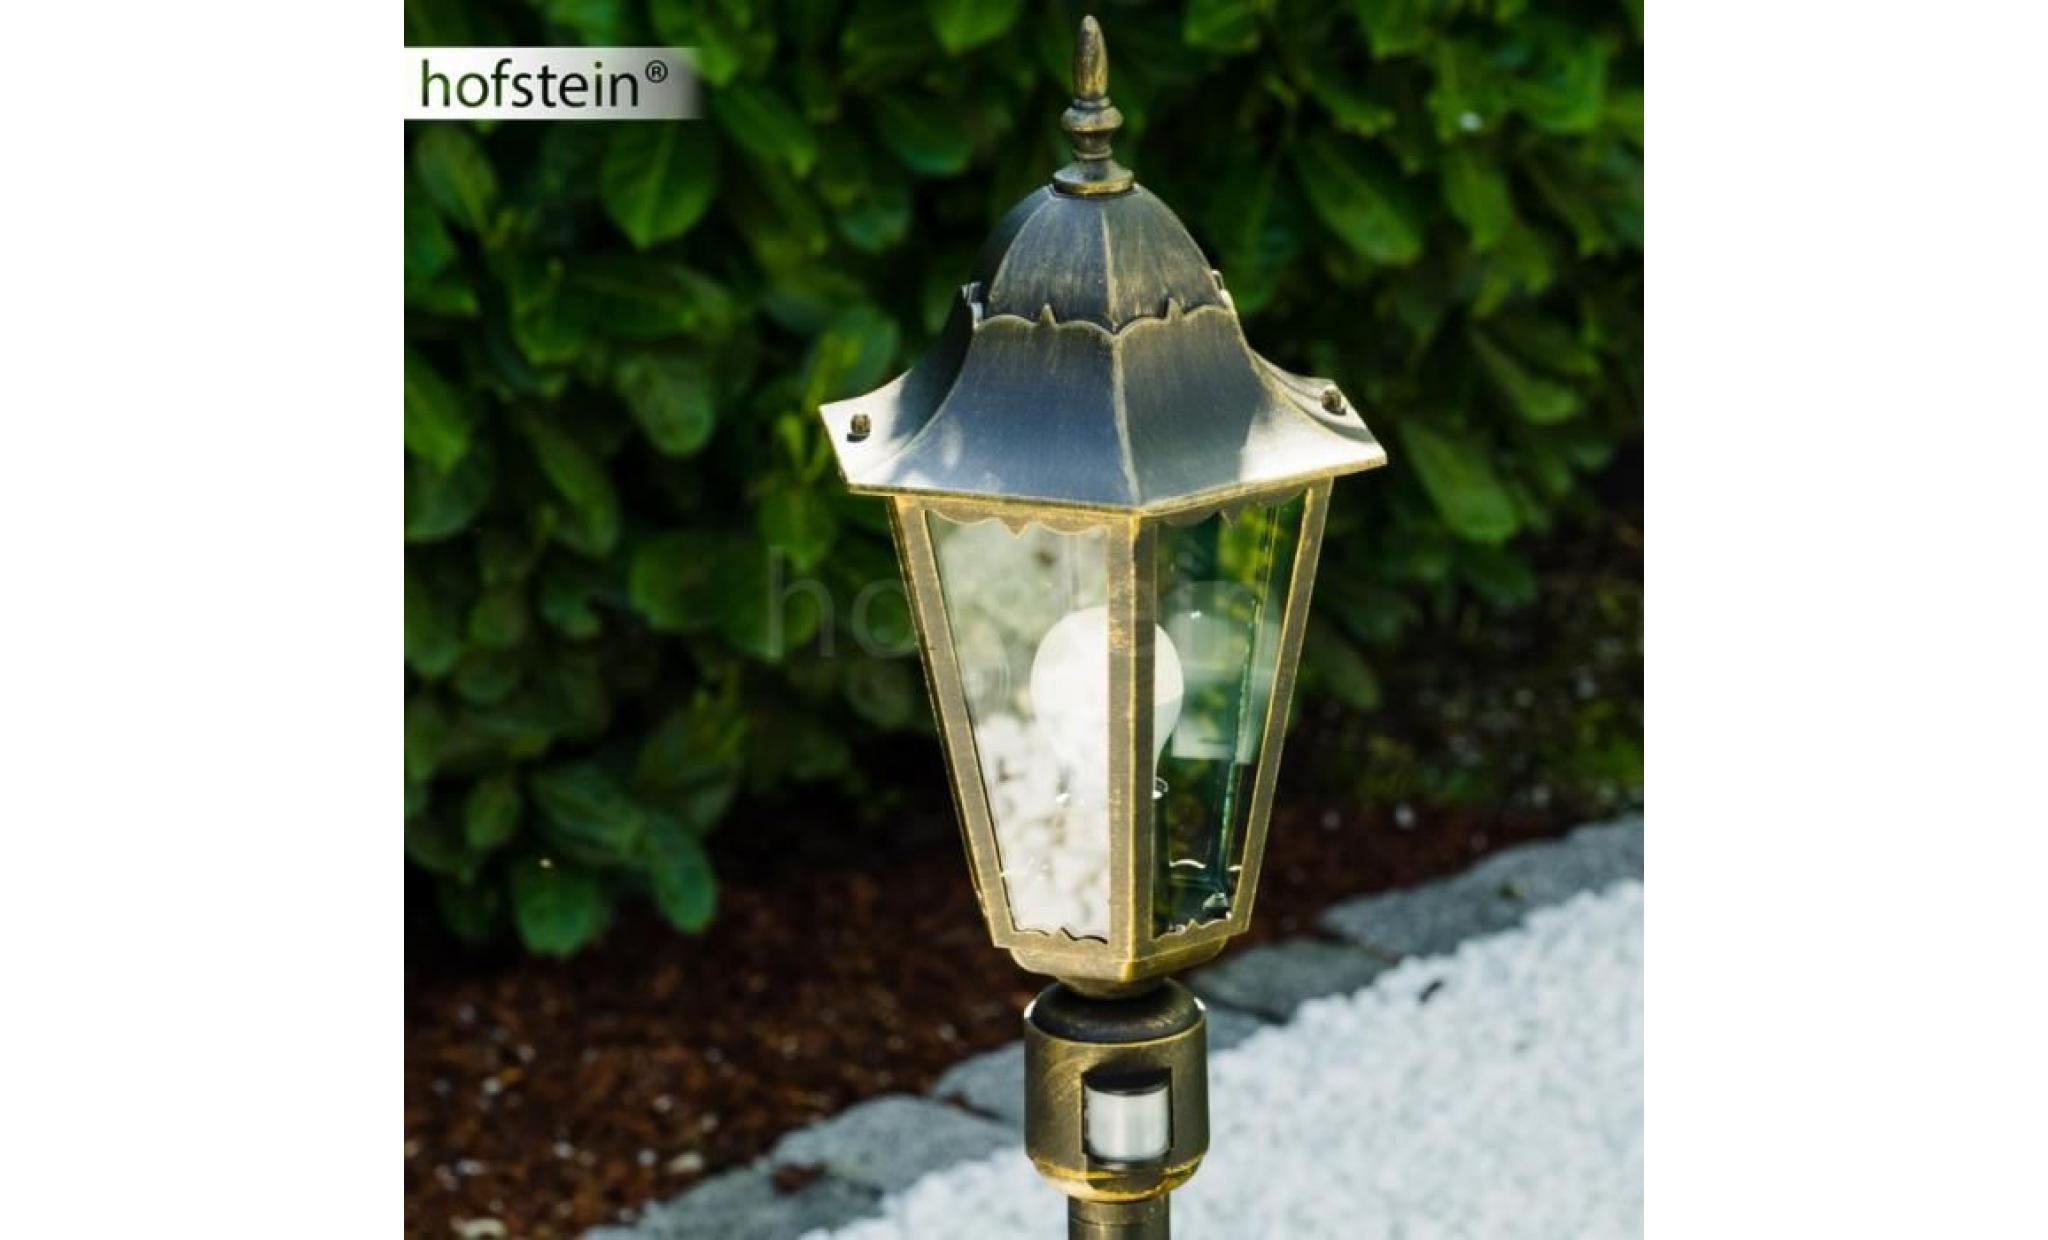 lampadaire d'extérieur hofstein bristol patine bronze pas cher